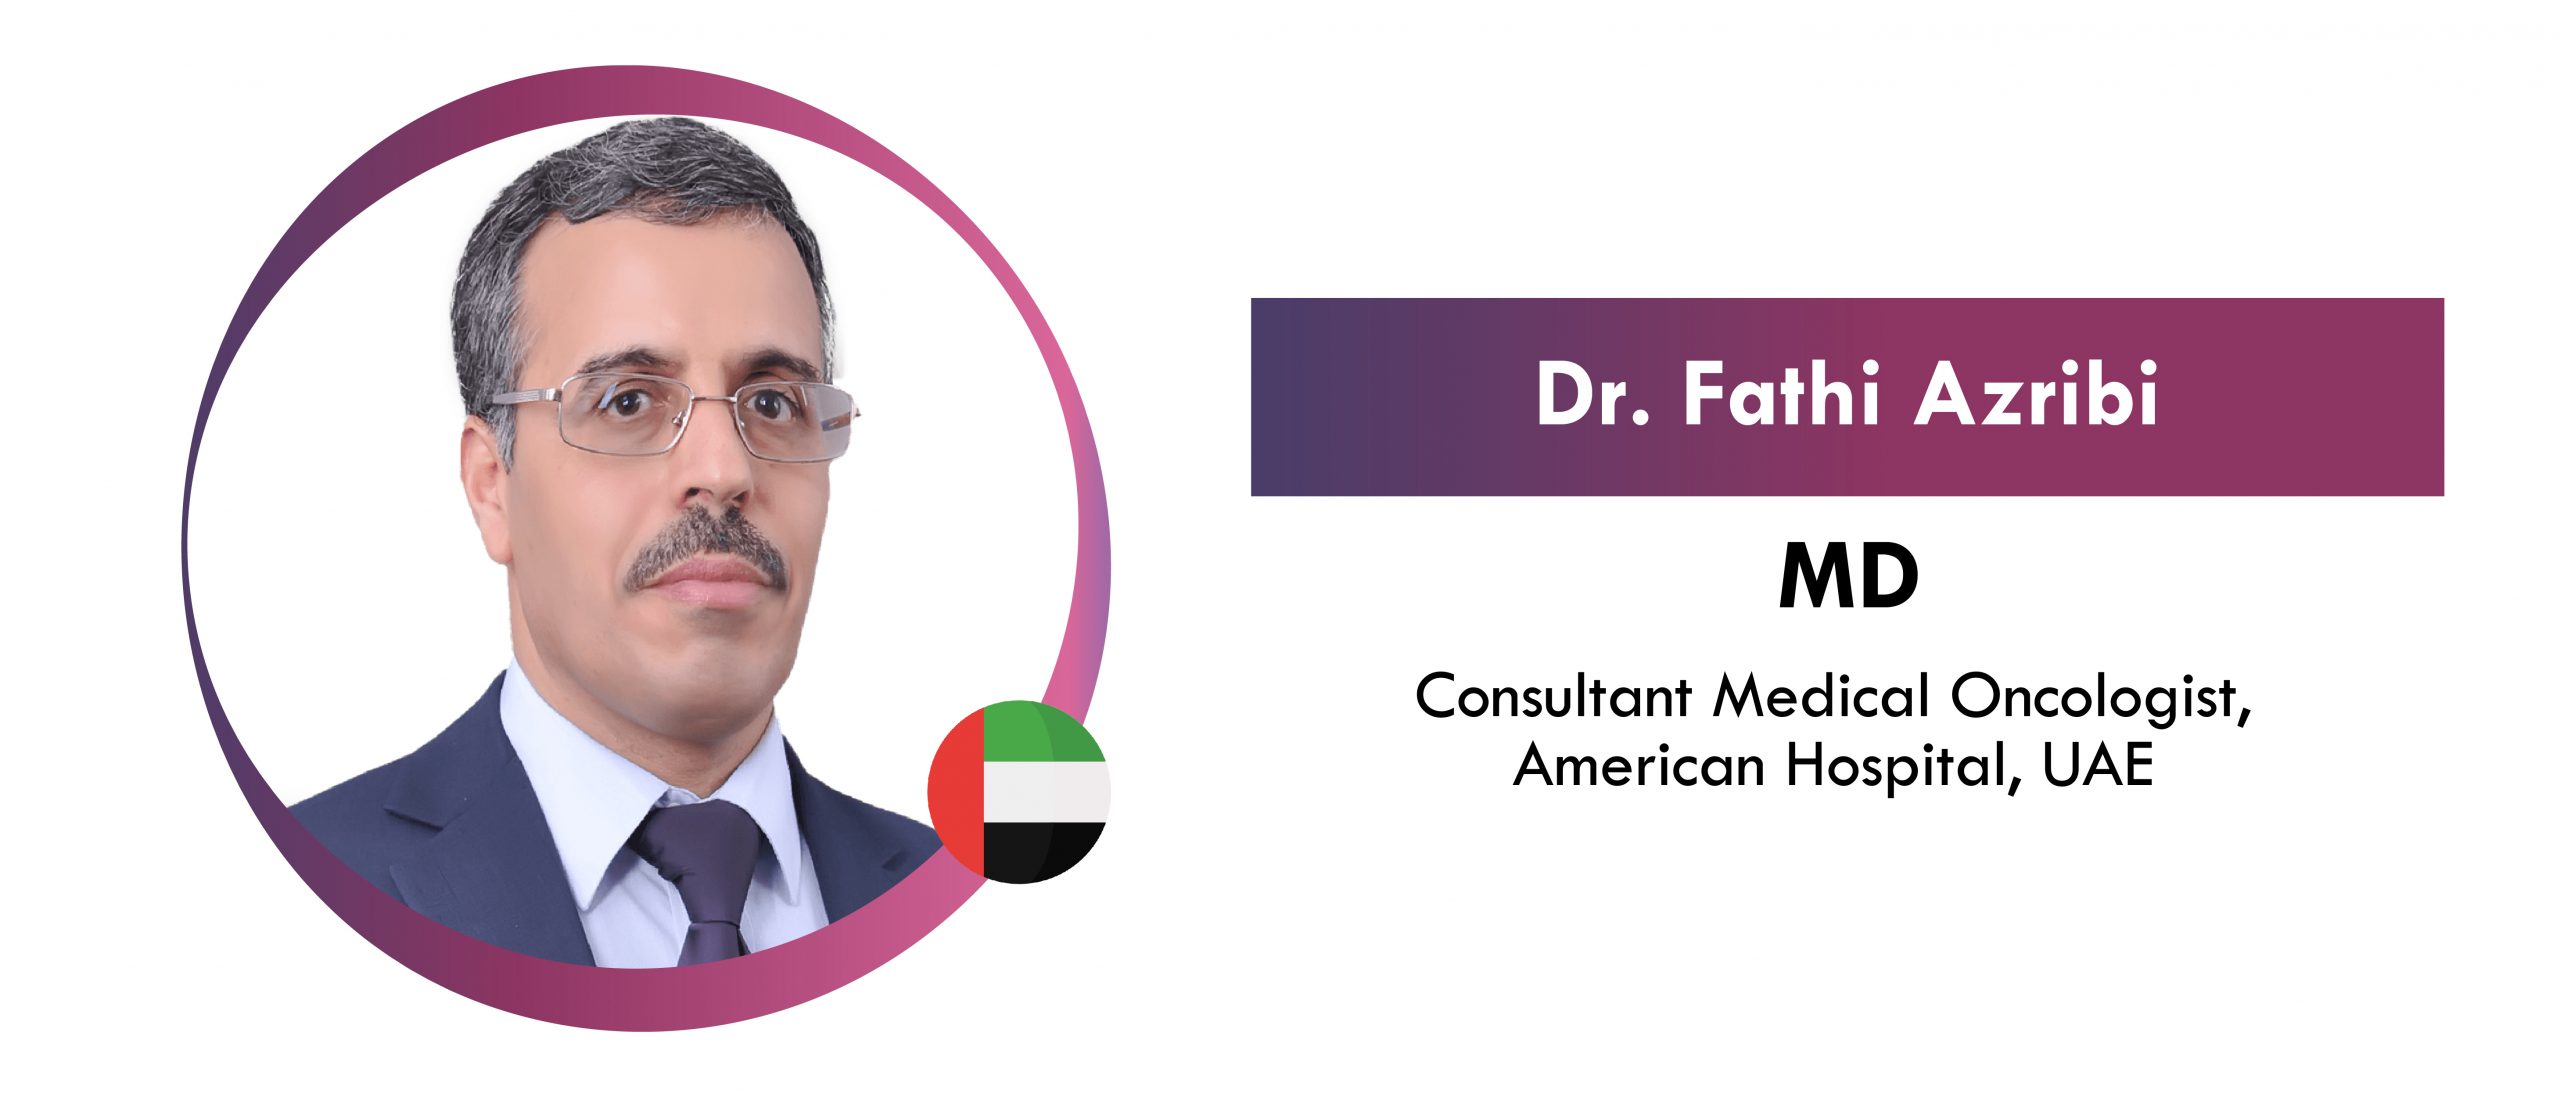 Dr. Fathi Azribi